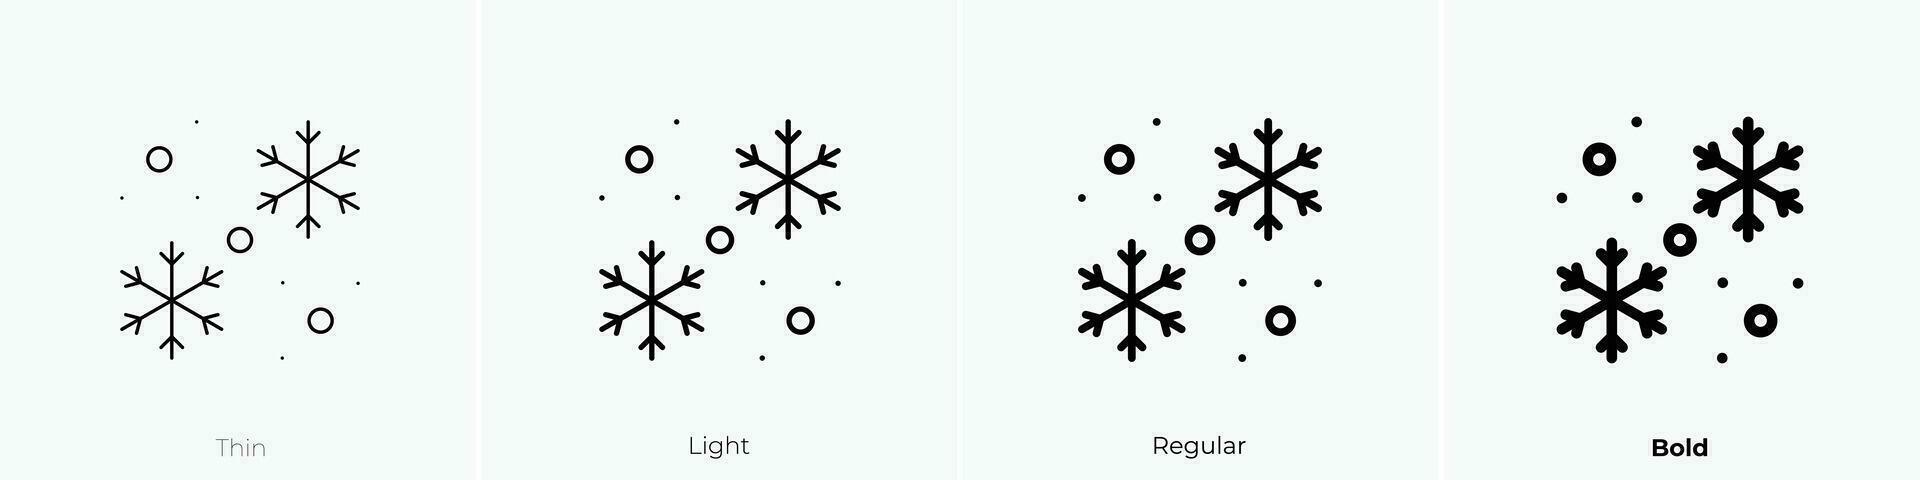 snöfall ikon. tunn, ljus, regelbunden och djärv stil design isolerat på vit bakgrund vektor